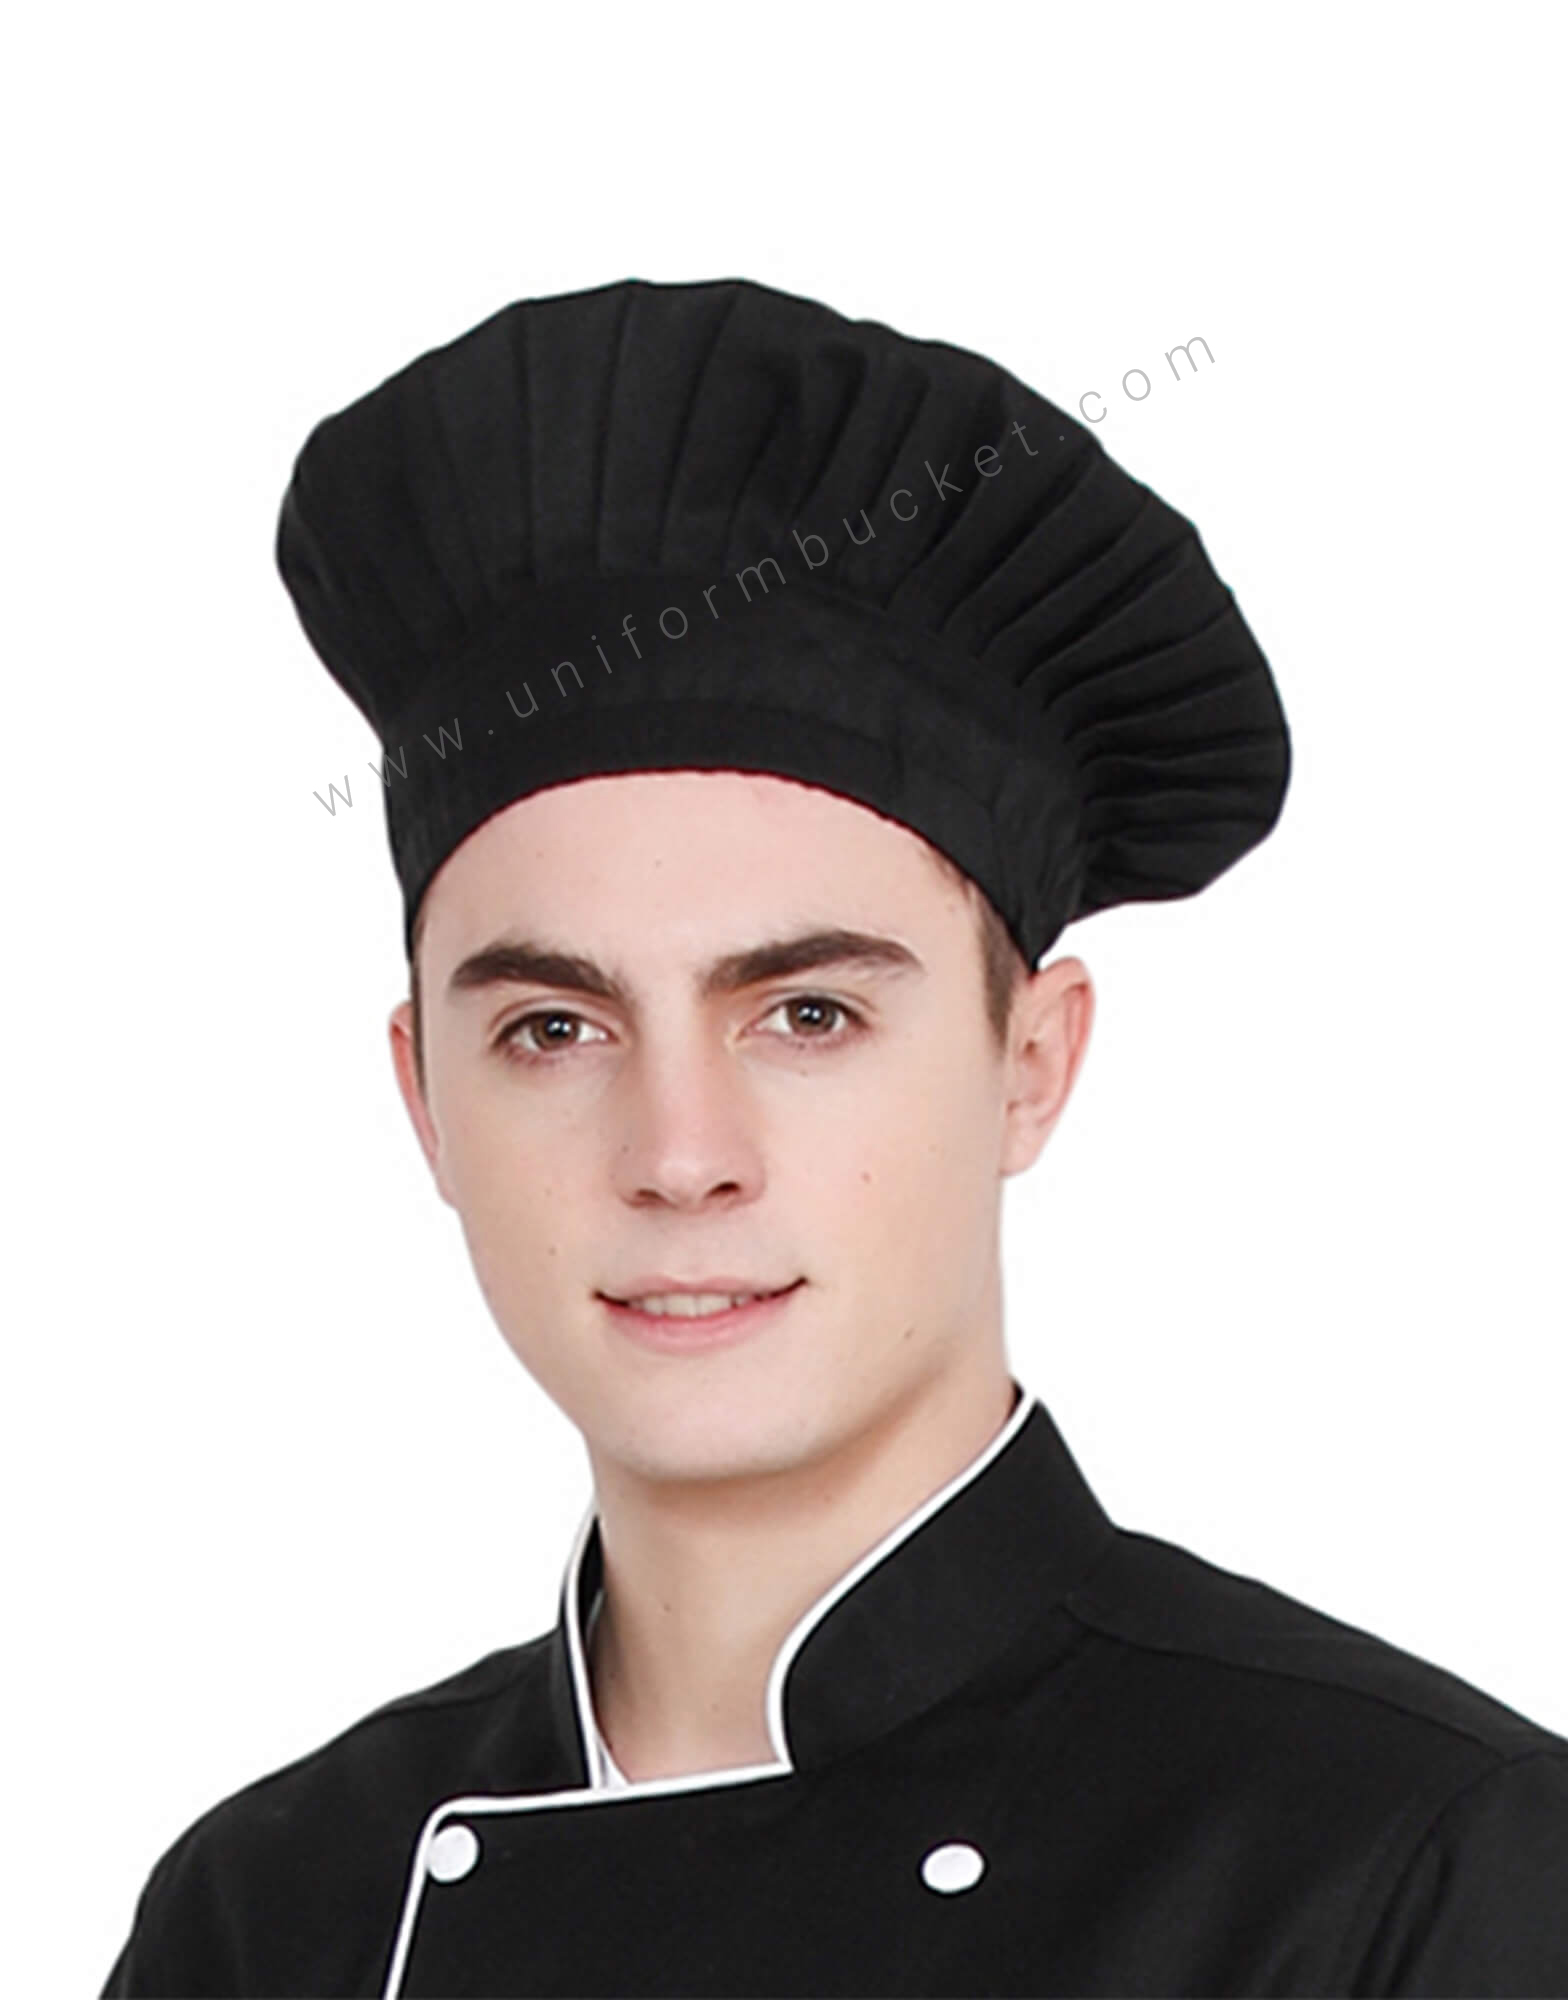 Buy Chef Skull Cap in Black Fabric Unisex Online @ Best Prices in India ...